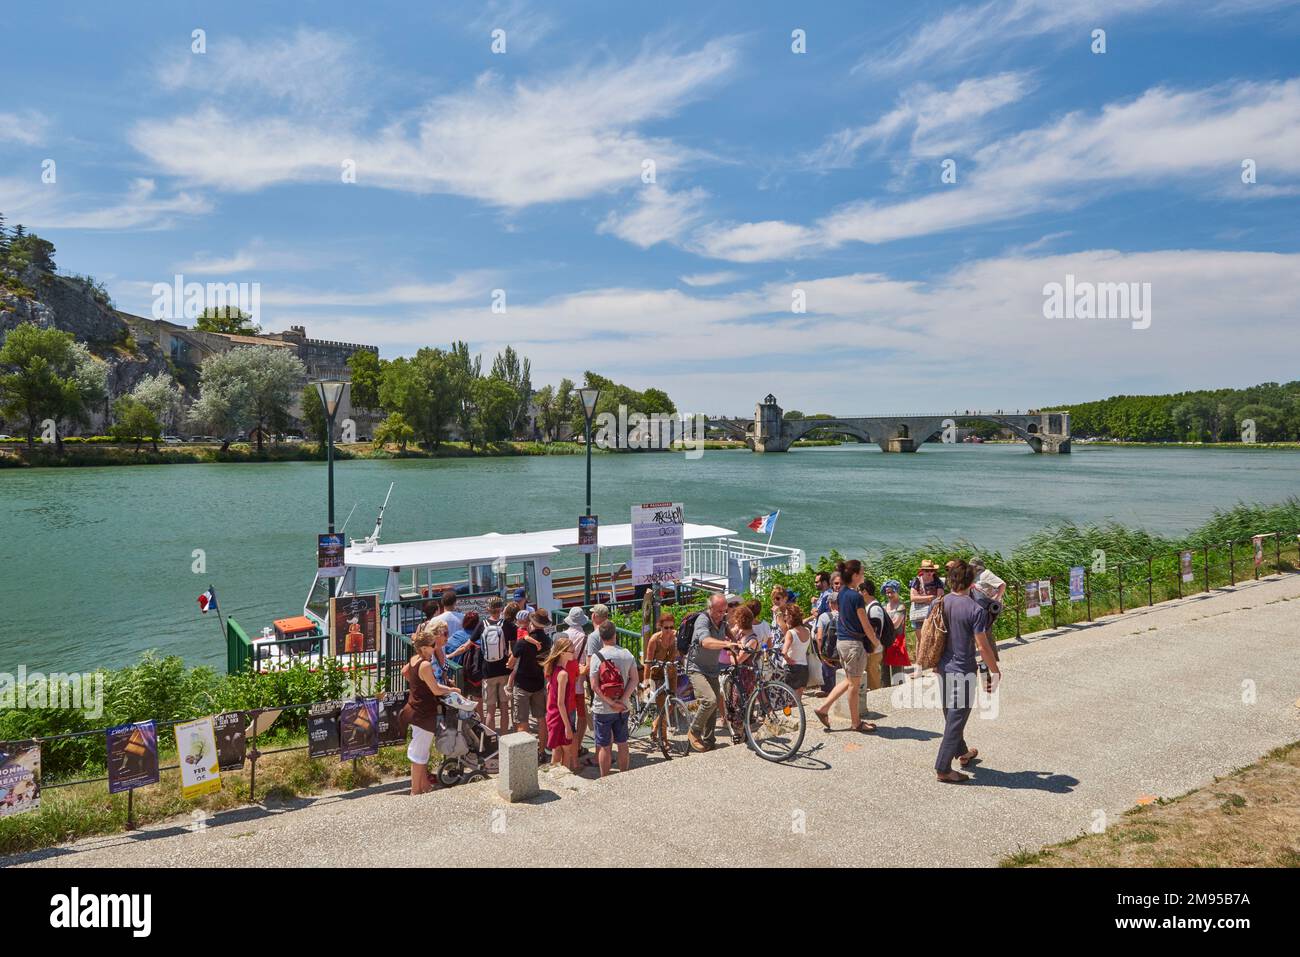 Avignon (sud-est de la France) : ferry "Rocher des Doms" sur le Rhône, service de bateau à aubes vers l'île de Barthelasse. Tourisme descendre de la bo Banque D'Images